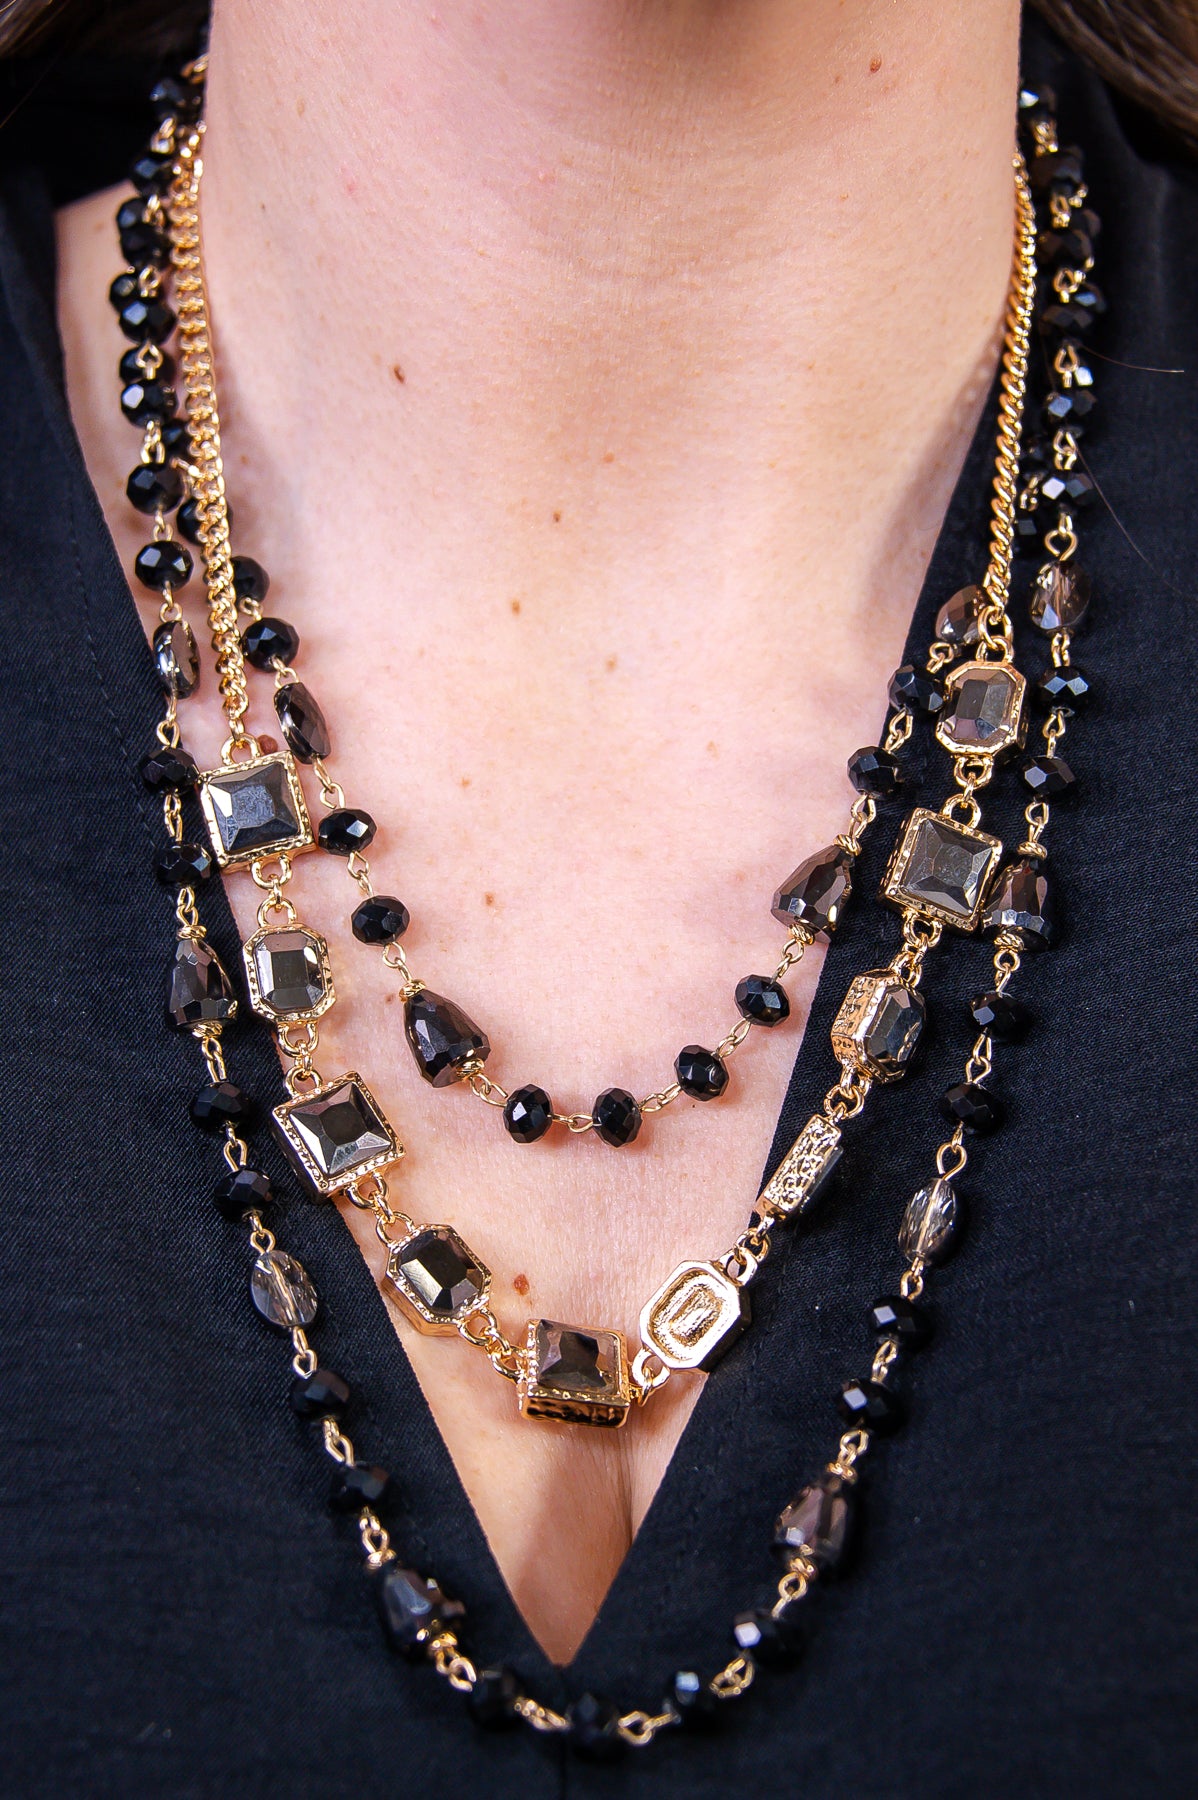 Black/Gold Beaded/Bling Layered Necklace - NEK4324BK